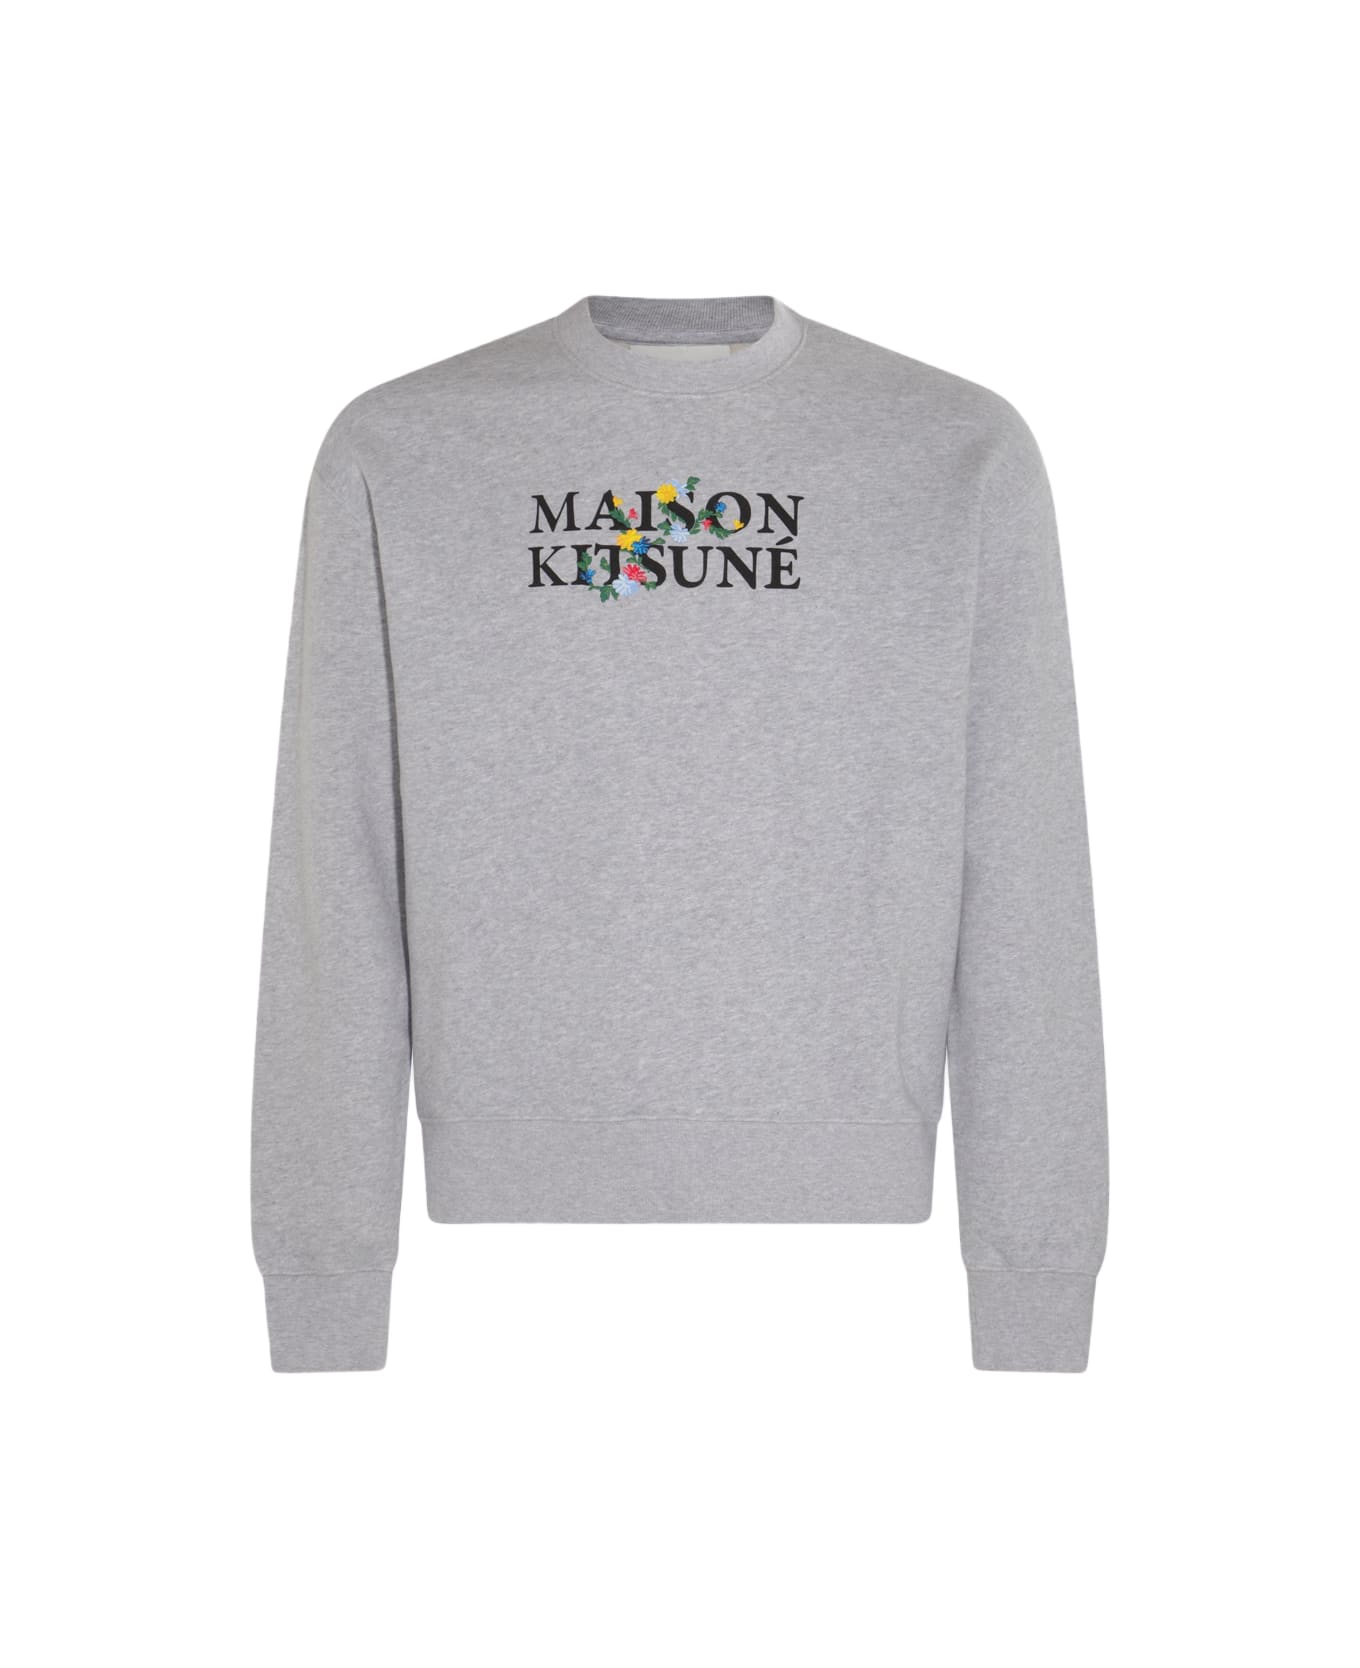 Maison Kitsuné Light Grey Melange Flower Lettering Sweatshirt - LIGHT GREY MELANGE